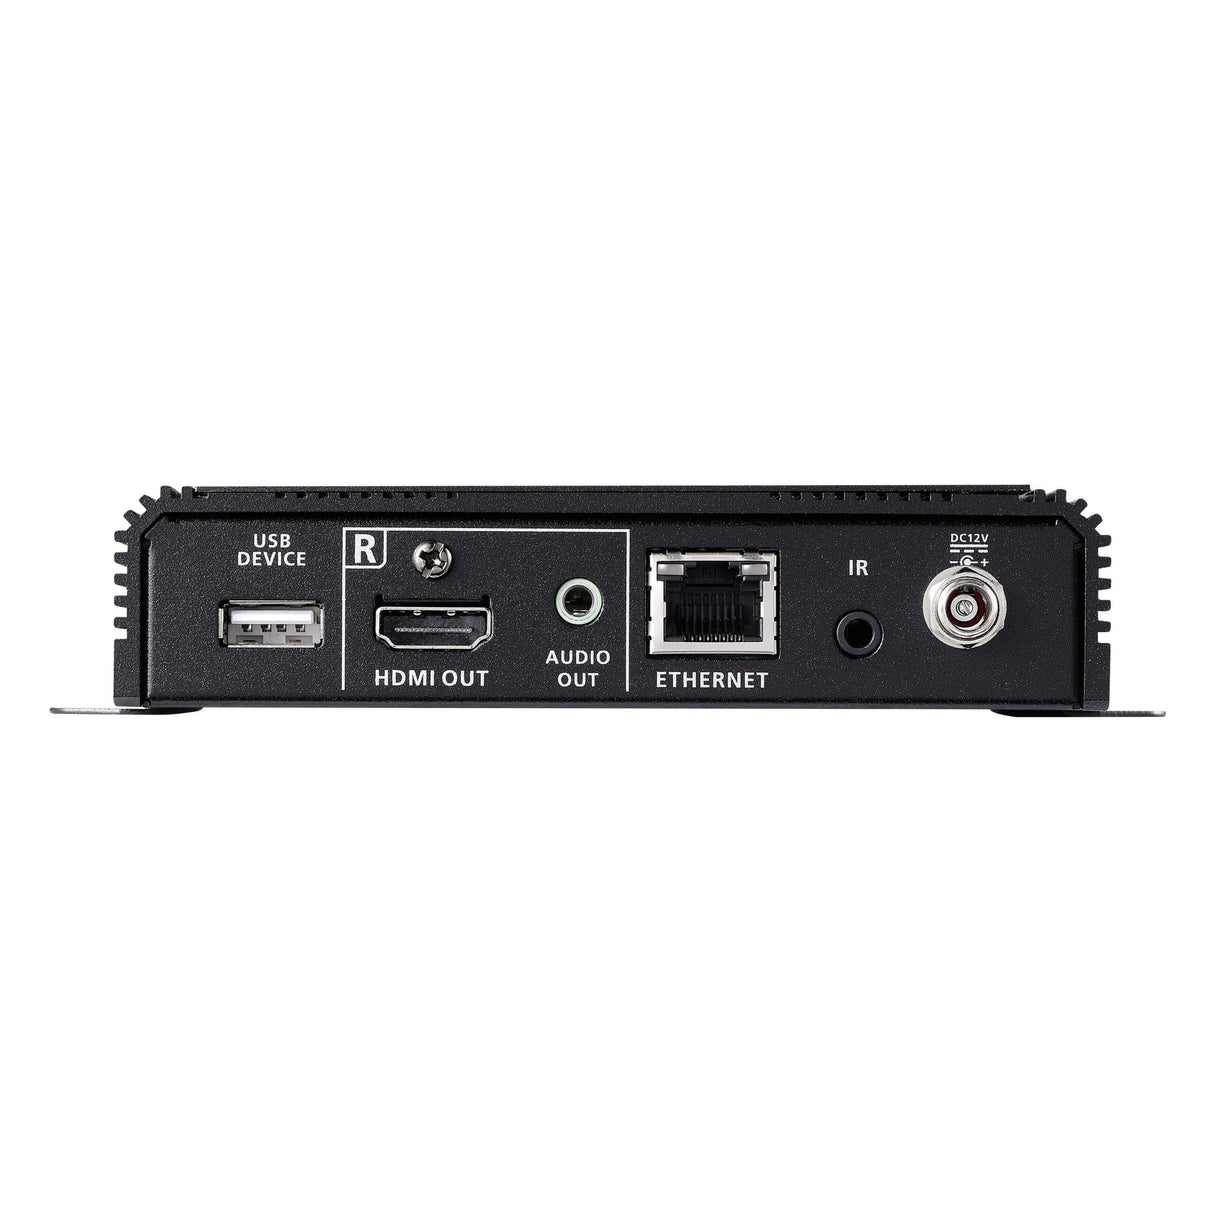 ATEN VE1843 True 4K HDMI/USB HDBaseT 3.0 Transceiver